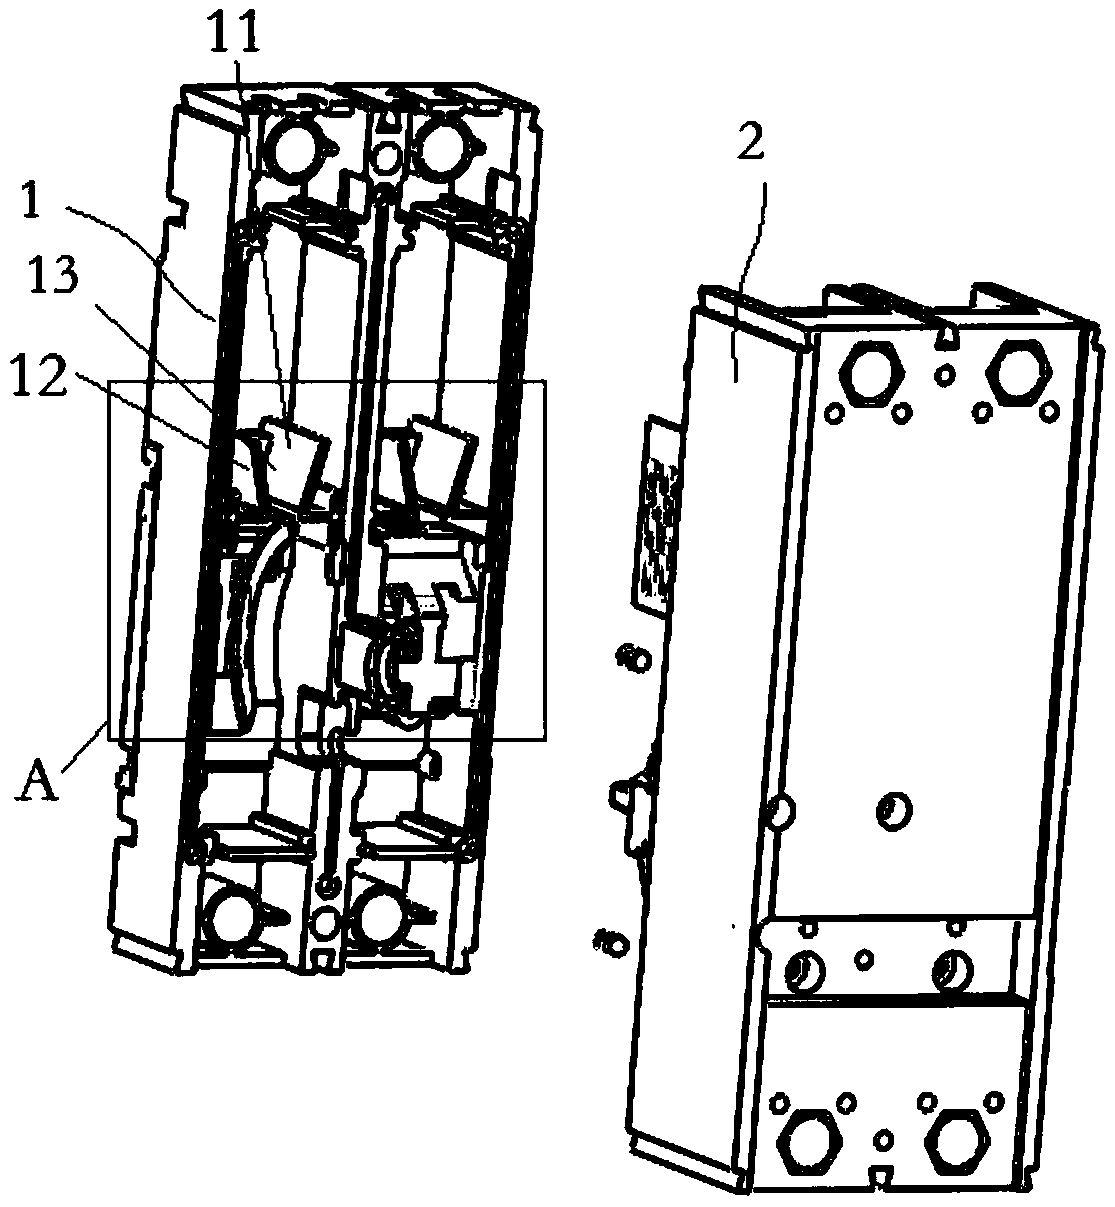 An easy-to-break DC circuit breaker